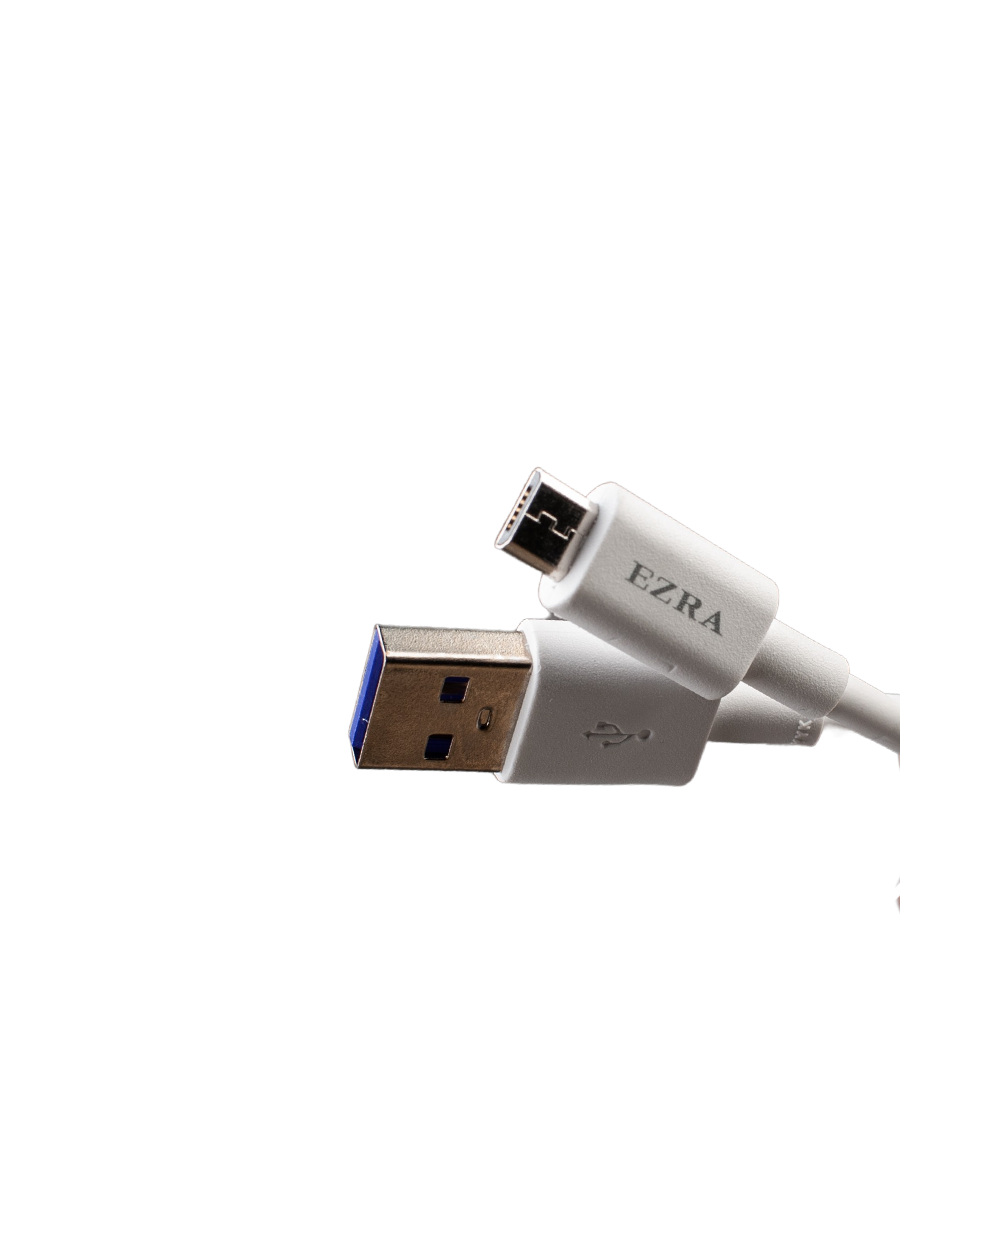 Καλώδιο Γρήγορης Φόρτισης & Μεταφοράς Δεδομένων USB 2.0 σε Micro-USB 5A, 1m EZRA DC72